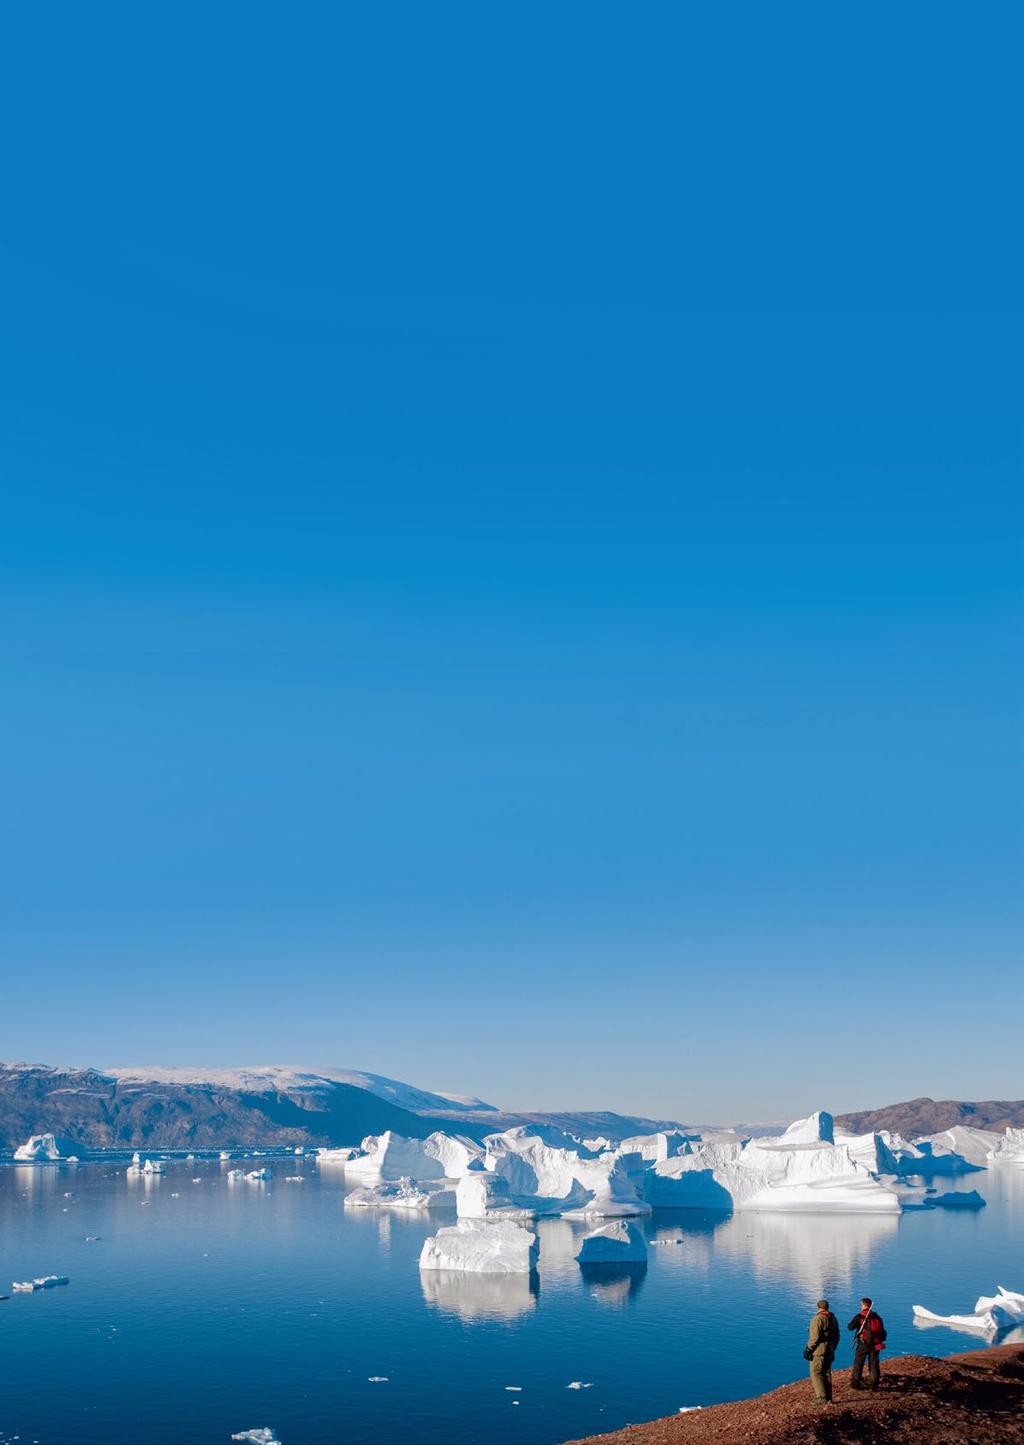 NORDÖSTRA GRÖNLAND - FLY & CRUISE Följ med på en spännande expeditionskryssning till nordöstra Grönland en av världens sista orörda vildmarker!